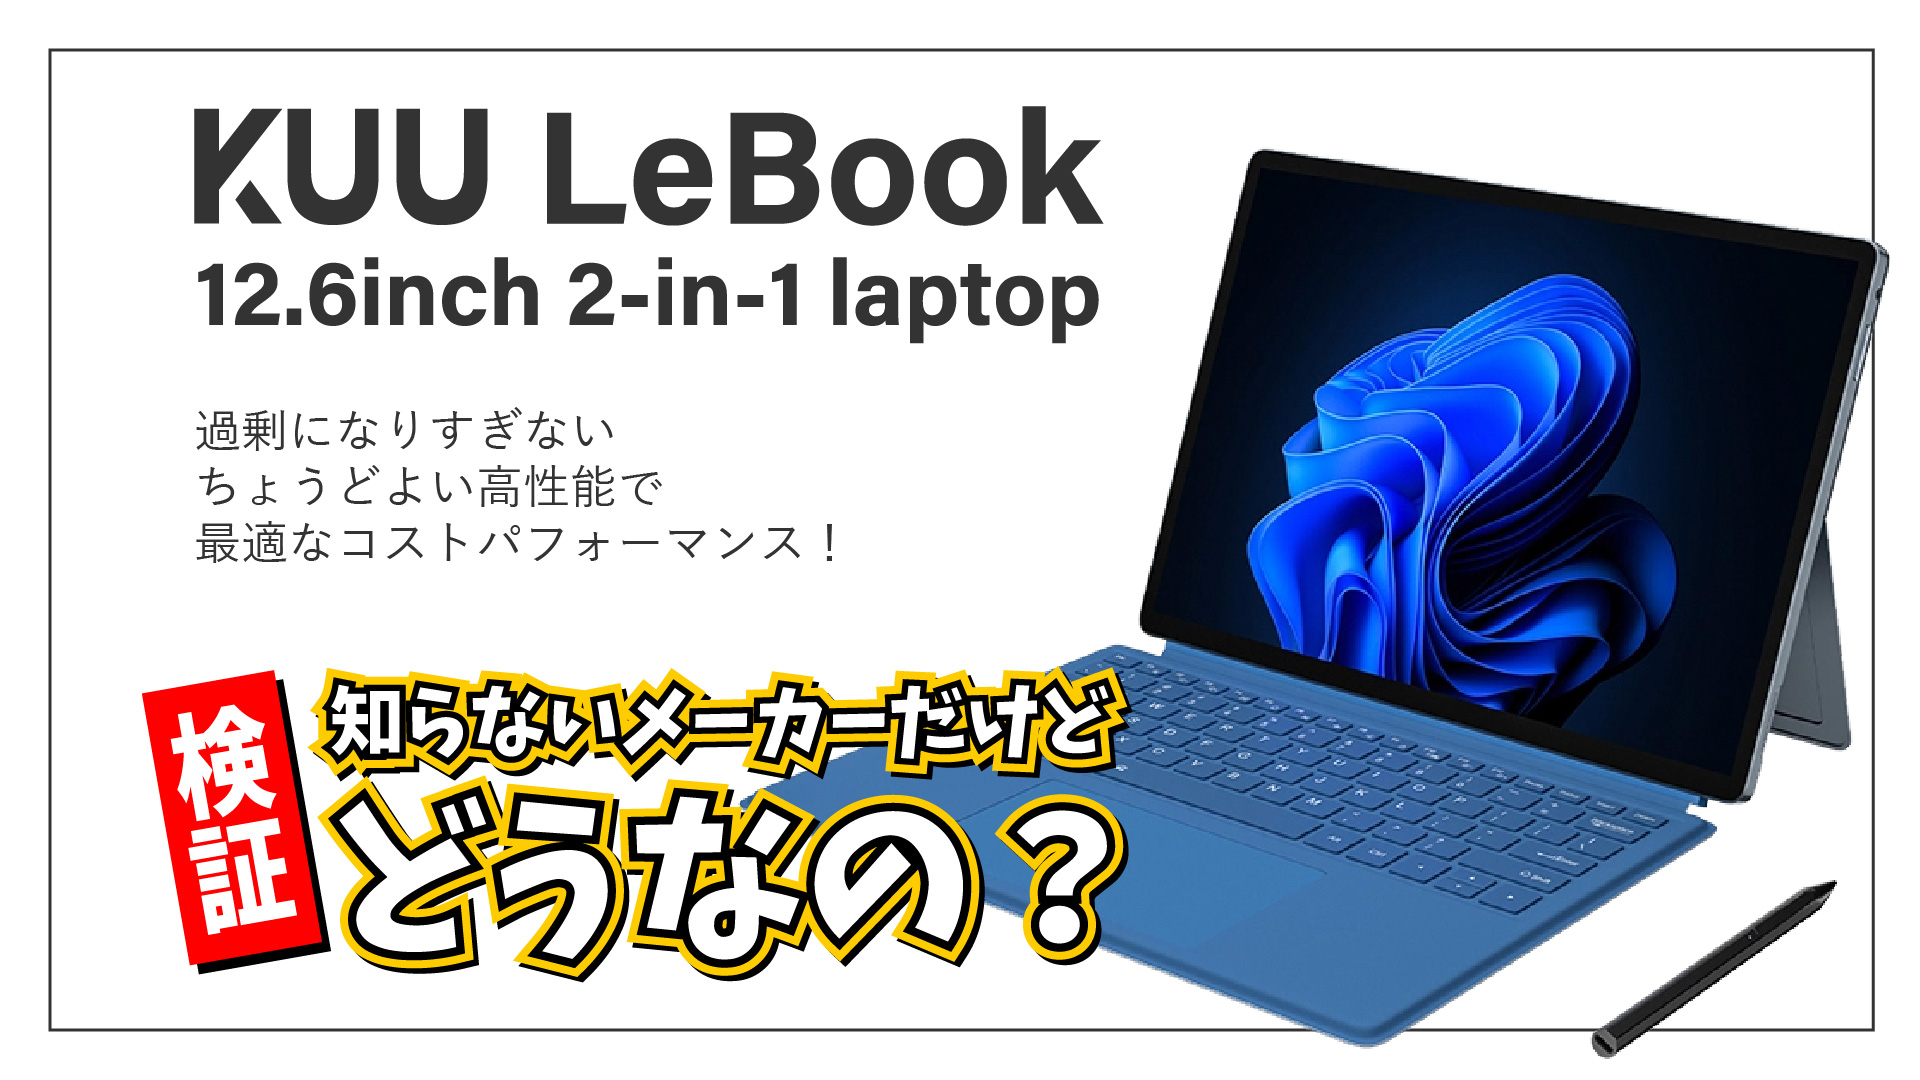 【検証！】KUU LeBook 12.6inch 2-in-1 Laptop 「KUU」って知らないメーカーの PC だけど、実際どうなの？